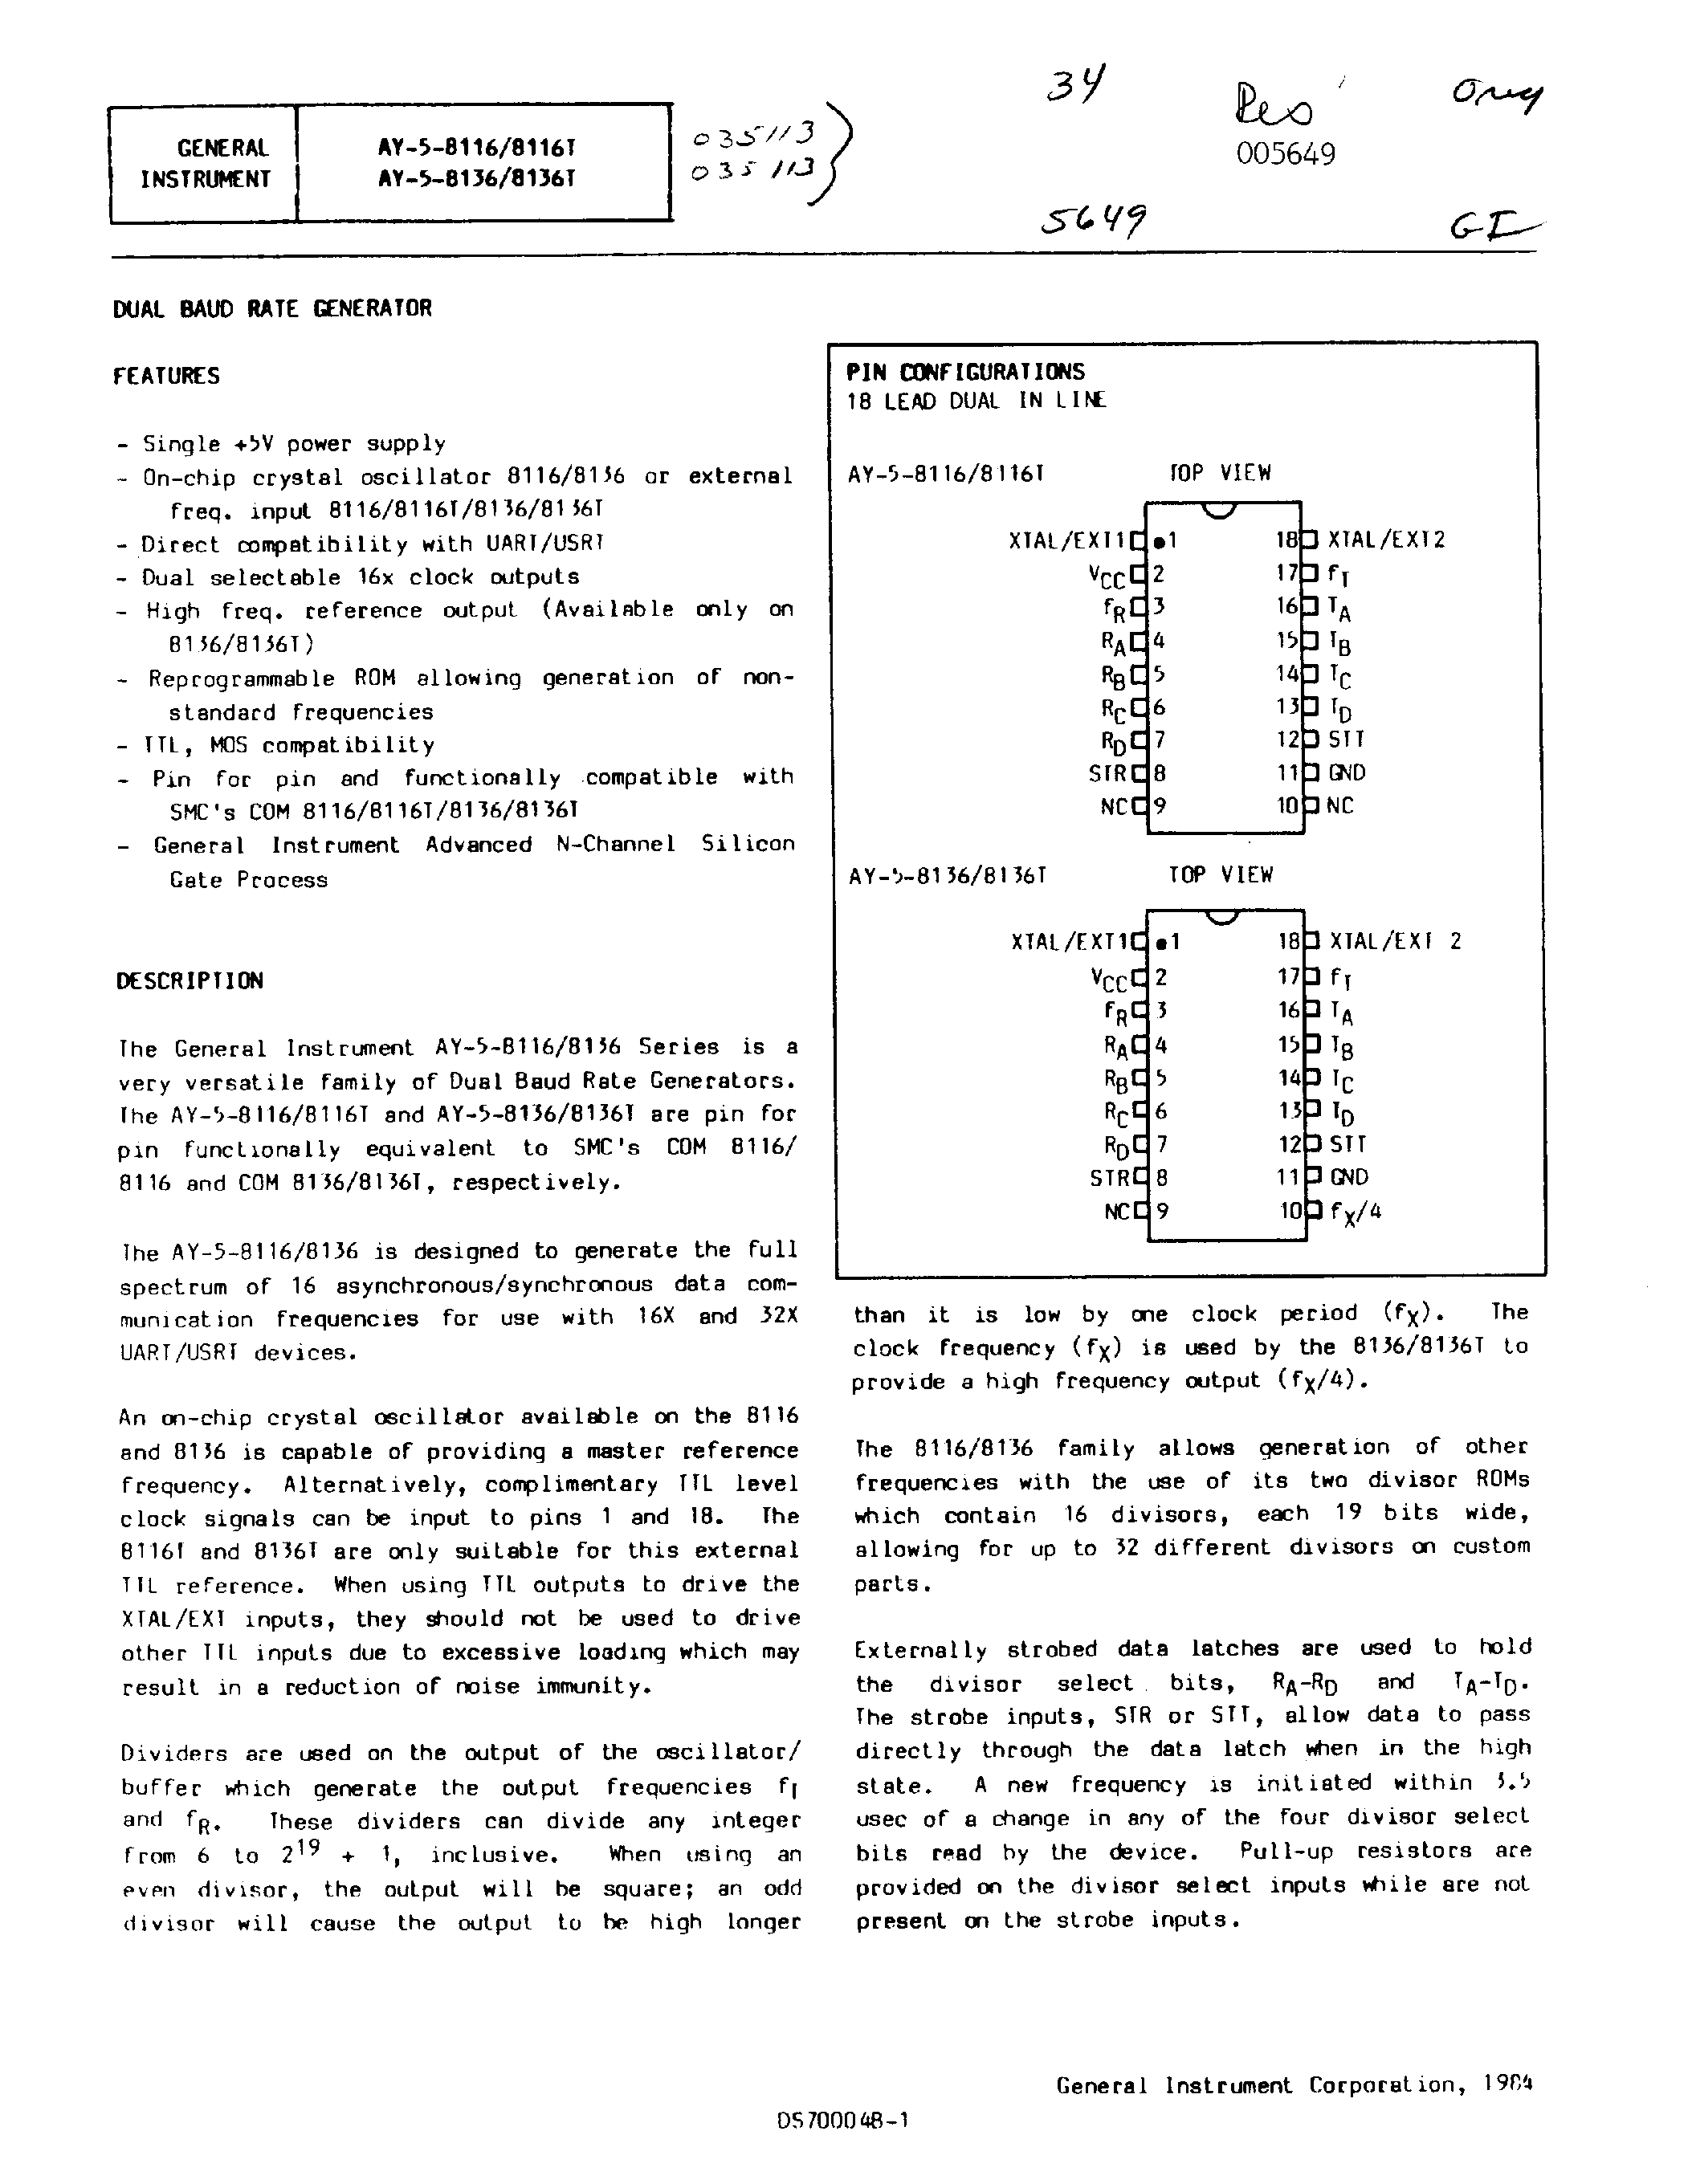 Datasheet AY-5-8116 - (AY-5-8116 / AY-5-8136) DUAL BAUD RATE GENERATOR page 1